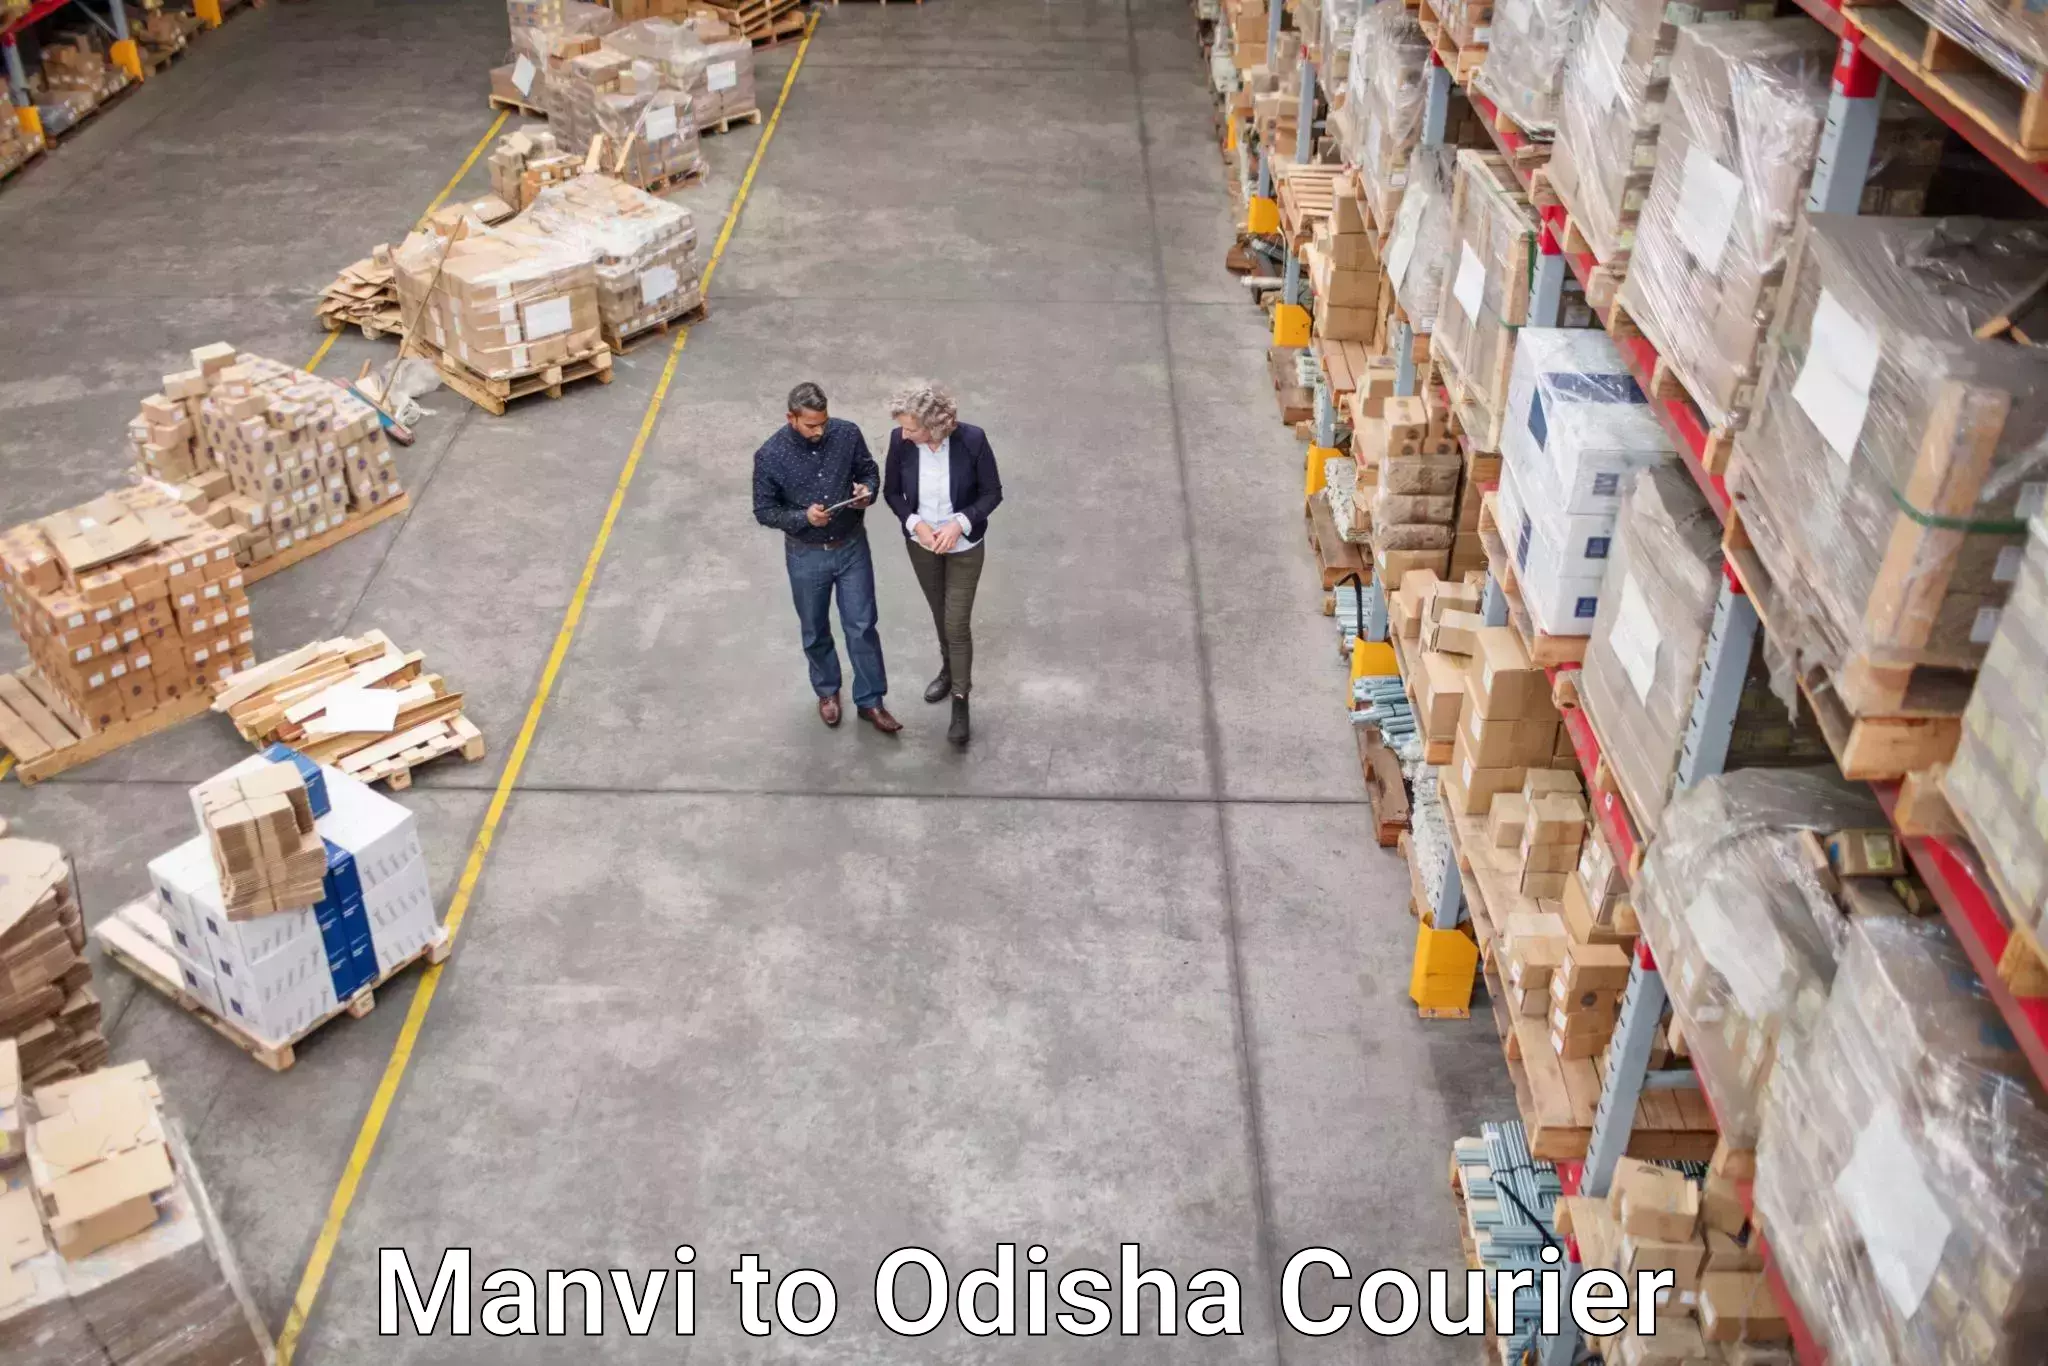 Courier service comparison Manvi to Balikuda